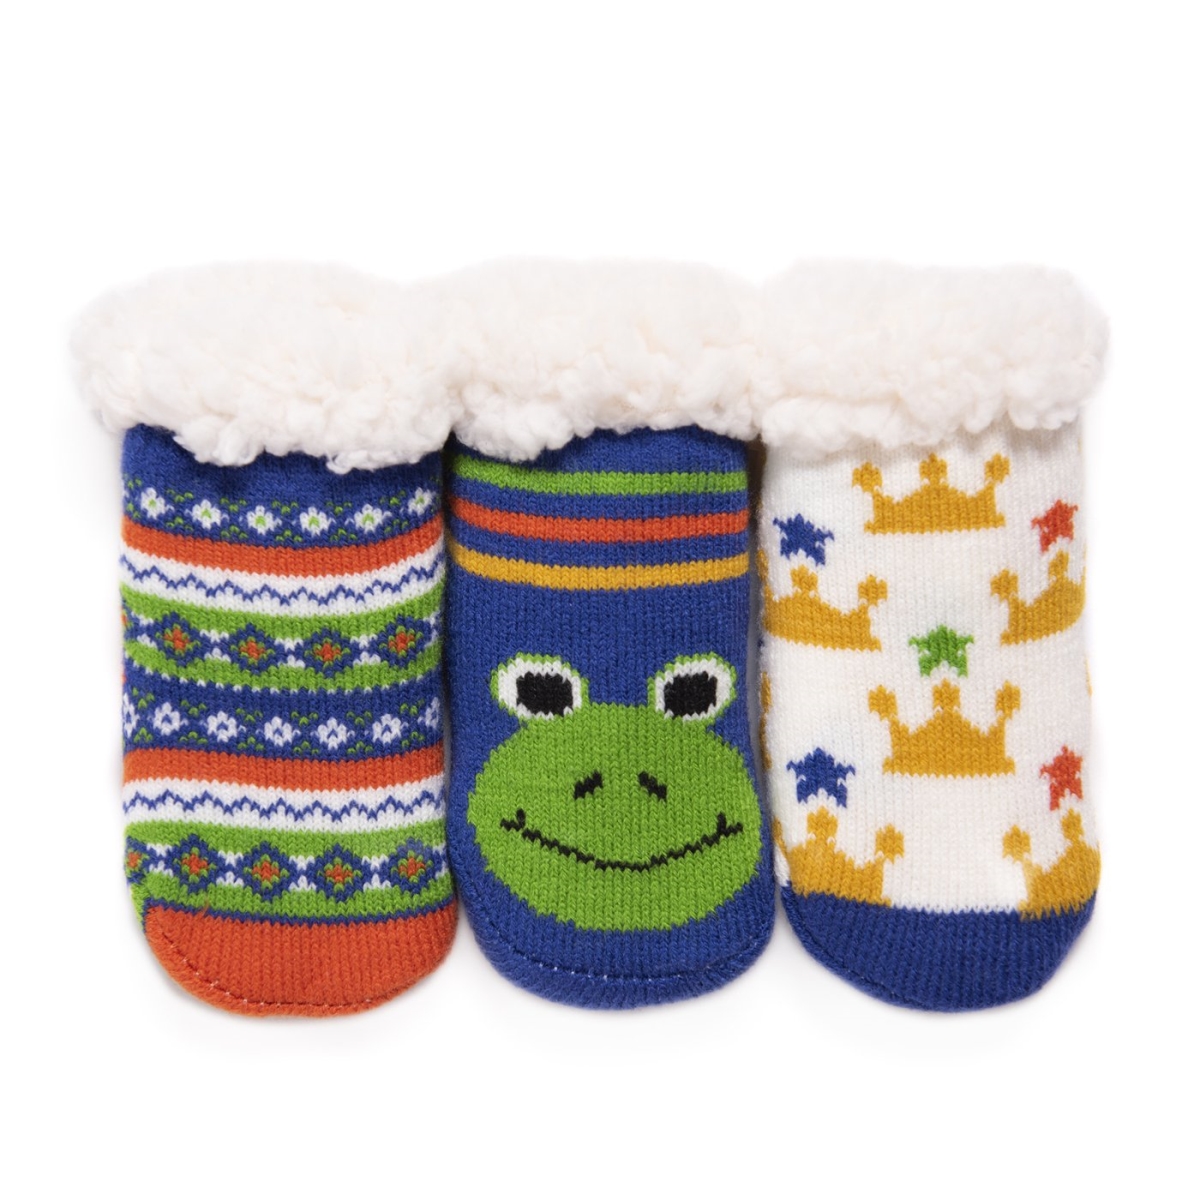 0023012420-inf5 Babys Cabin Socks, Porcelain Blue - Infant 5 - Pack Of 3